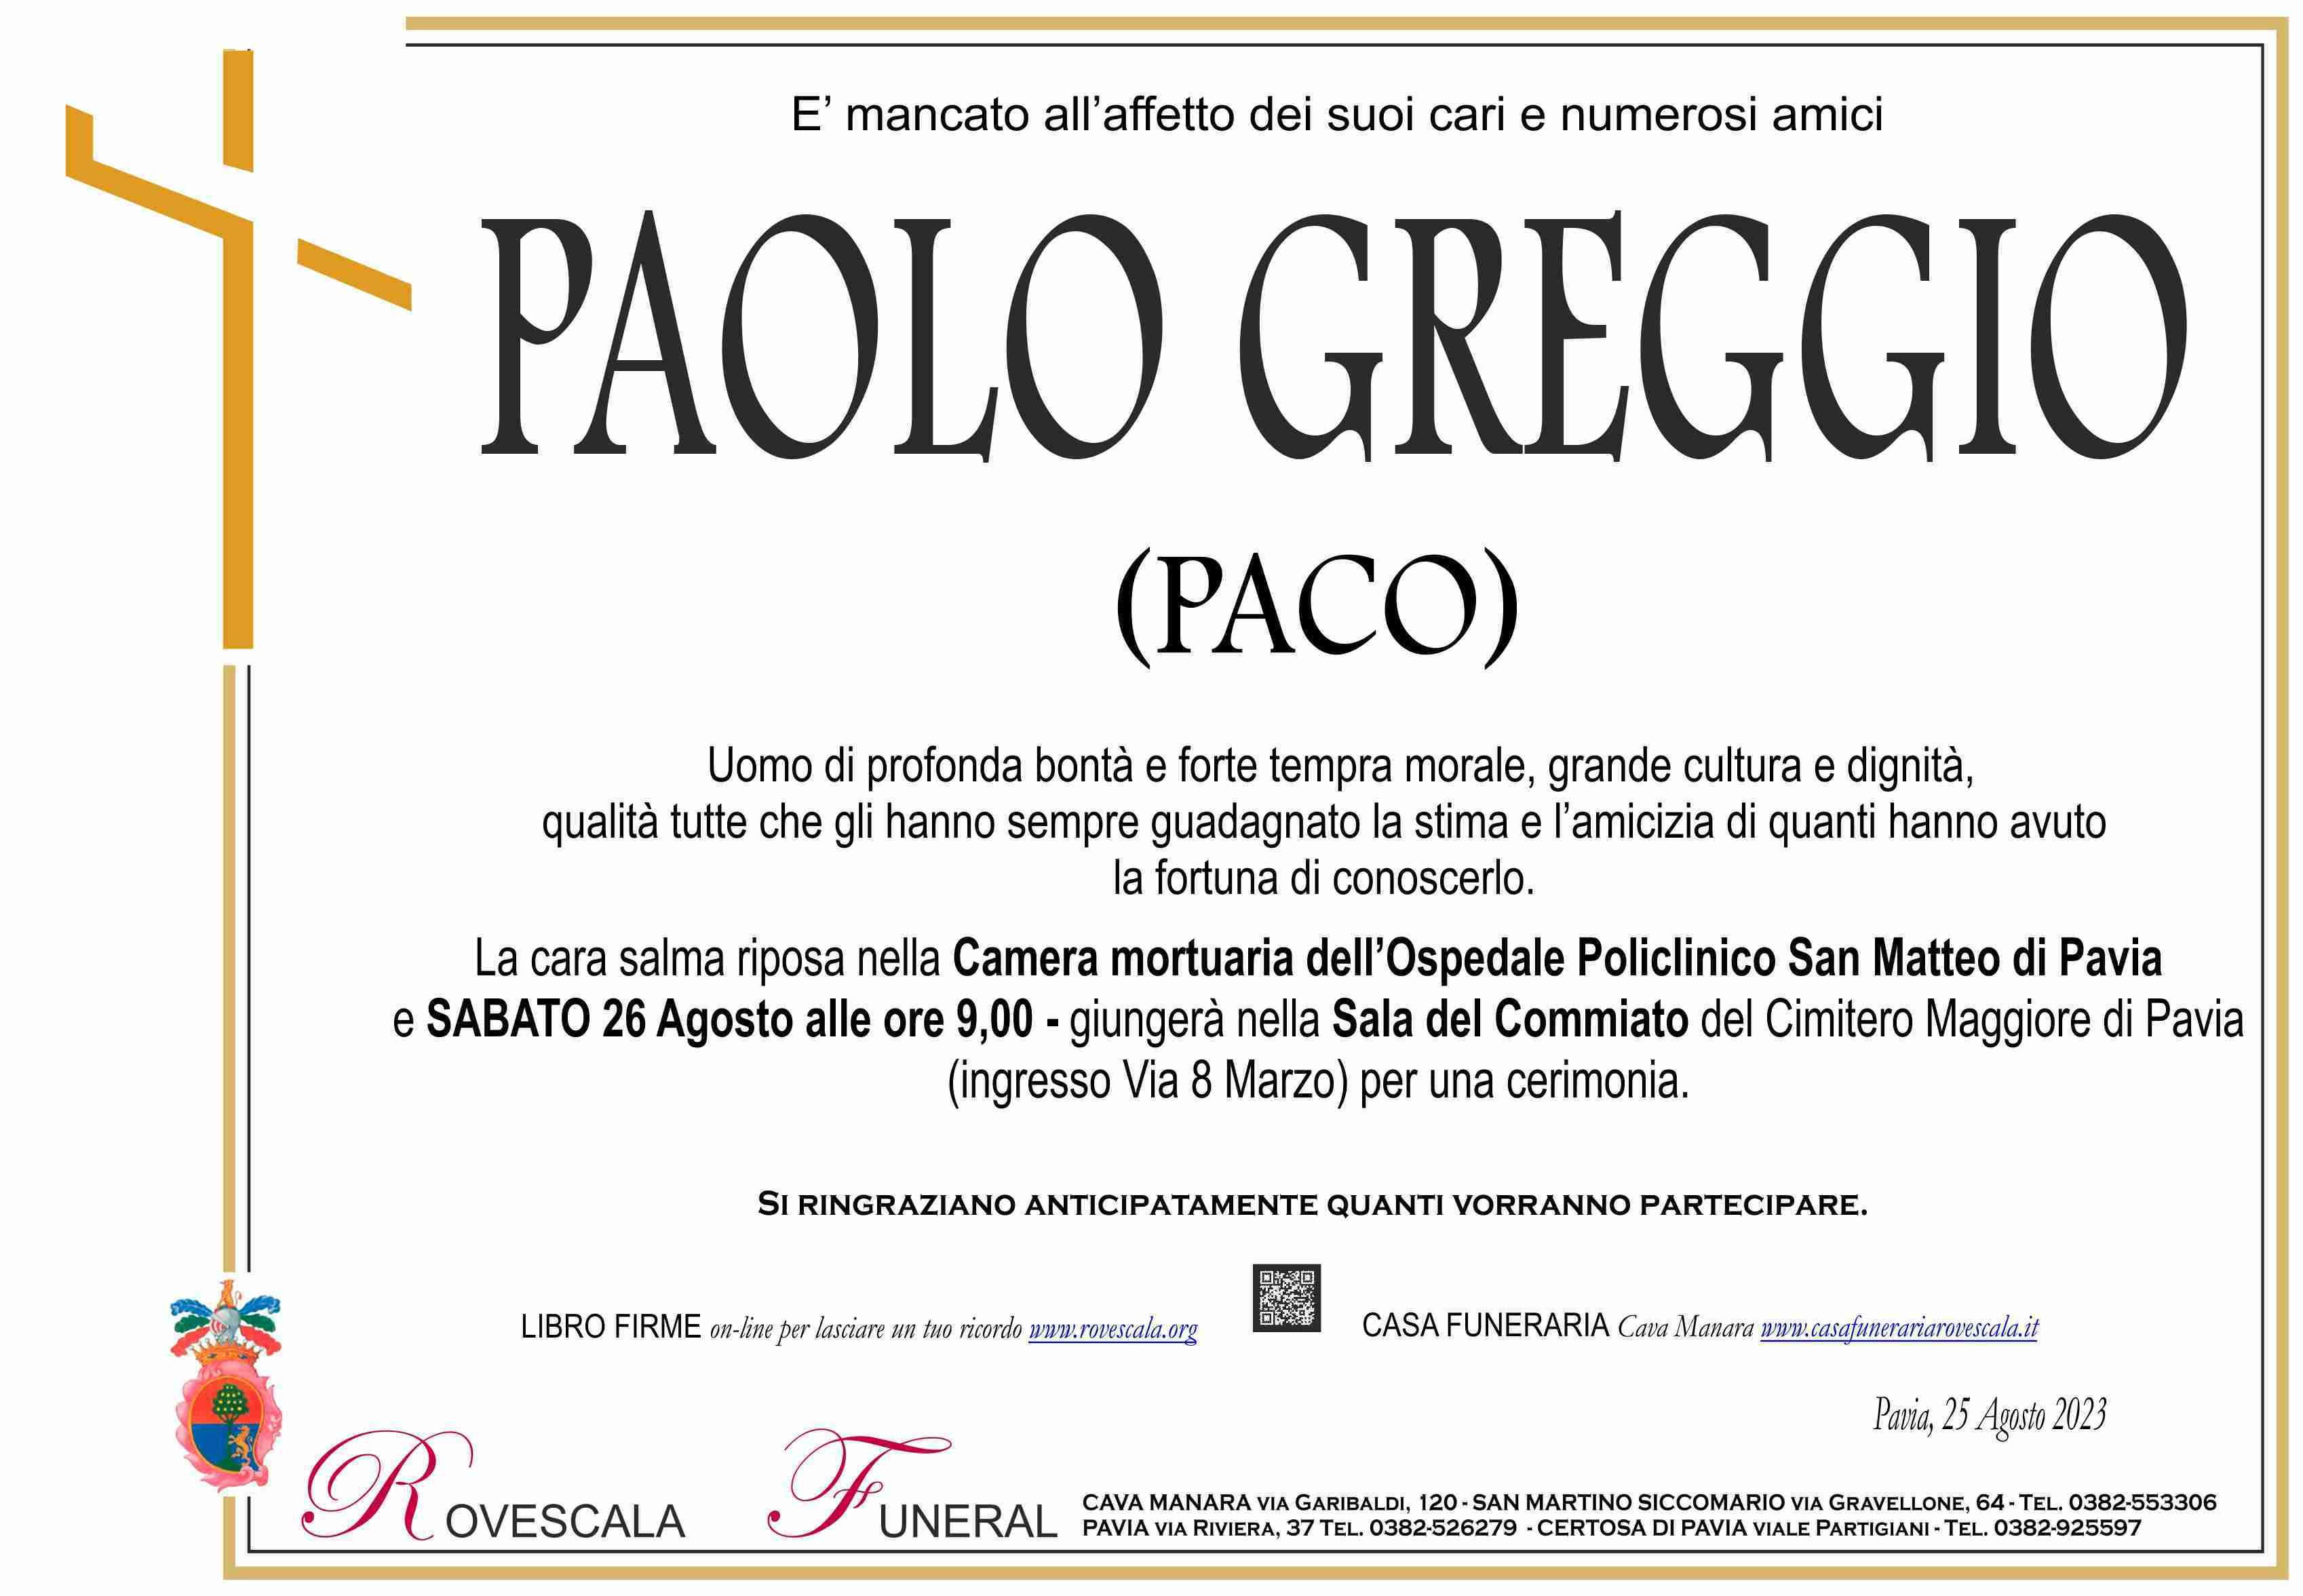 Paolo Maria Greggio